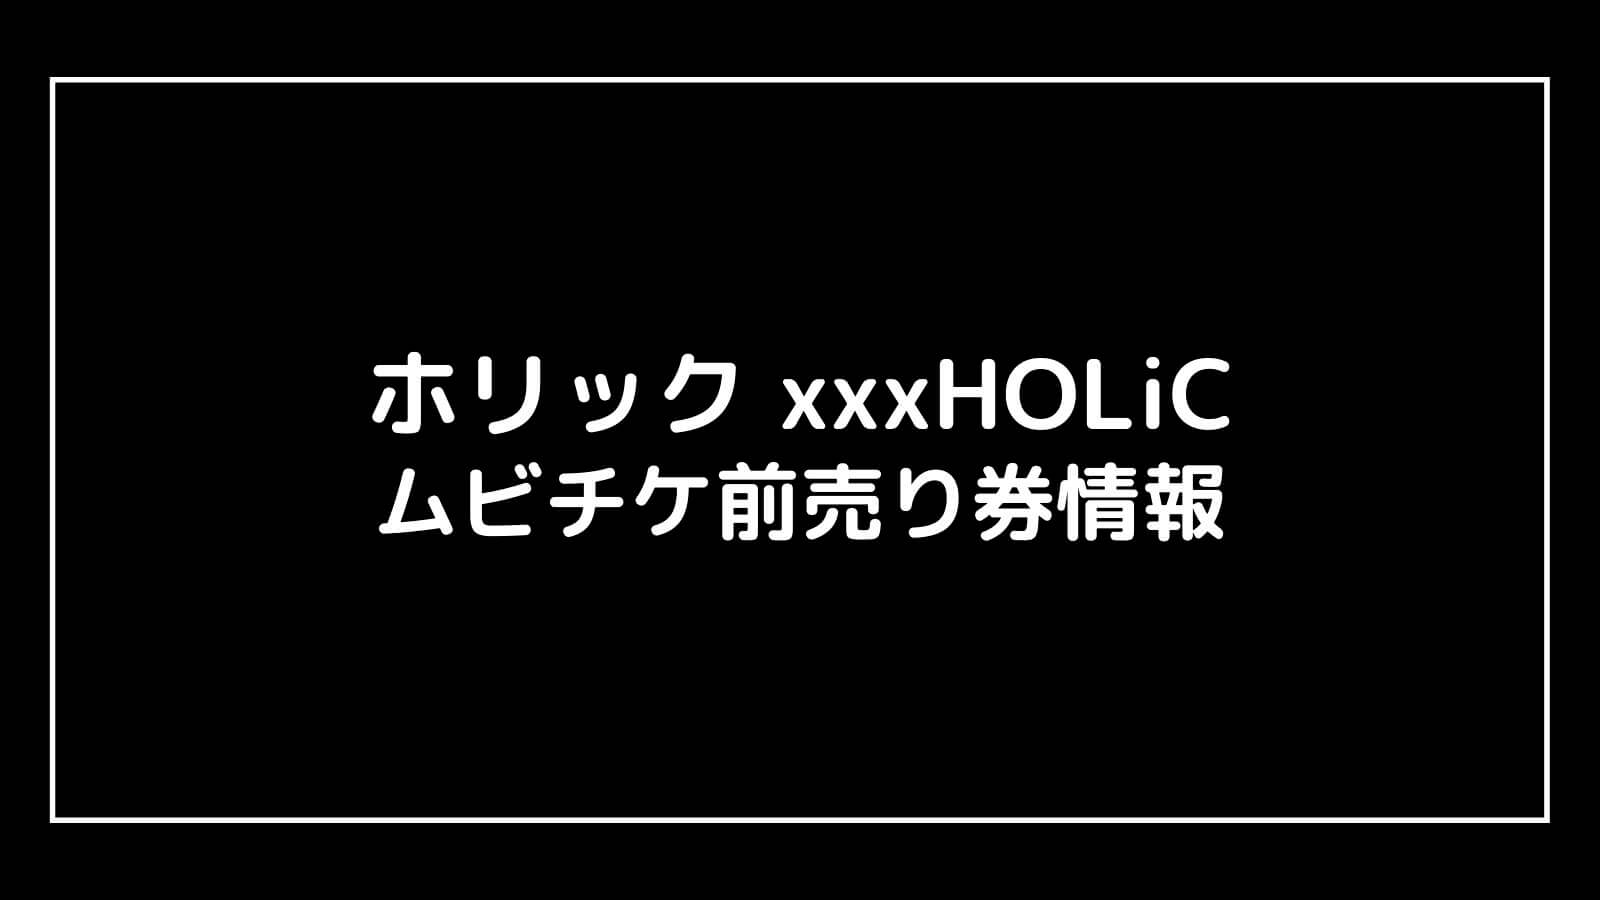 映画『ホリック xxxHOLiC』特典付きムビチケ前売り券の情報まとめ